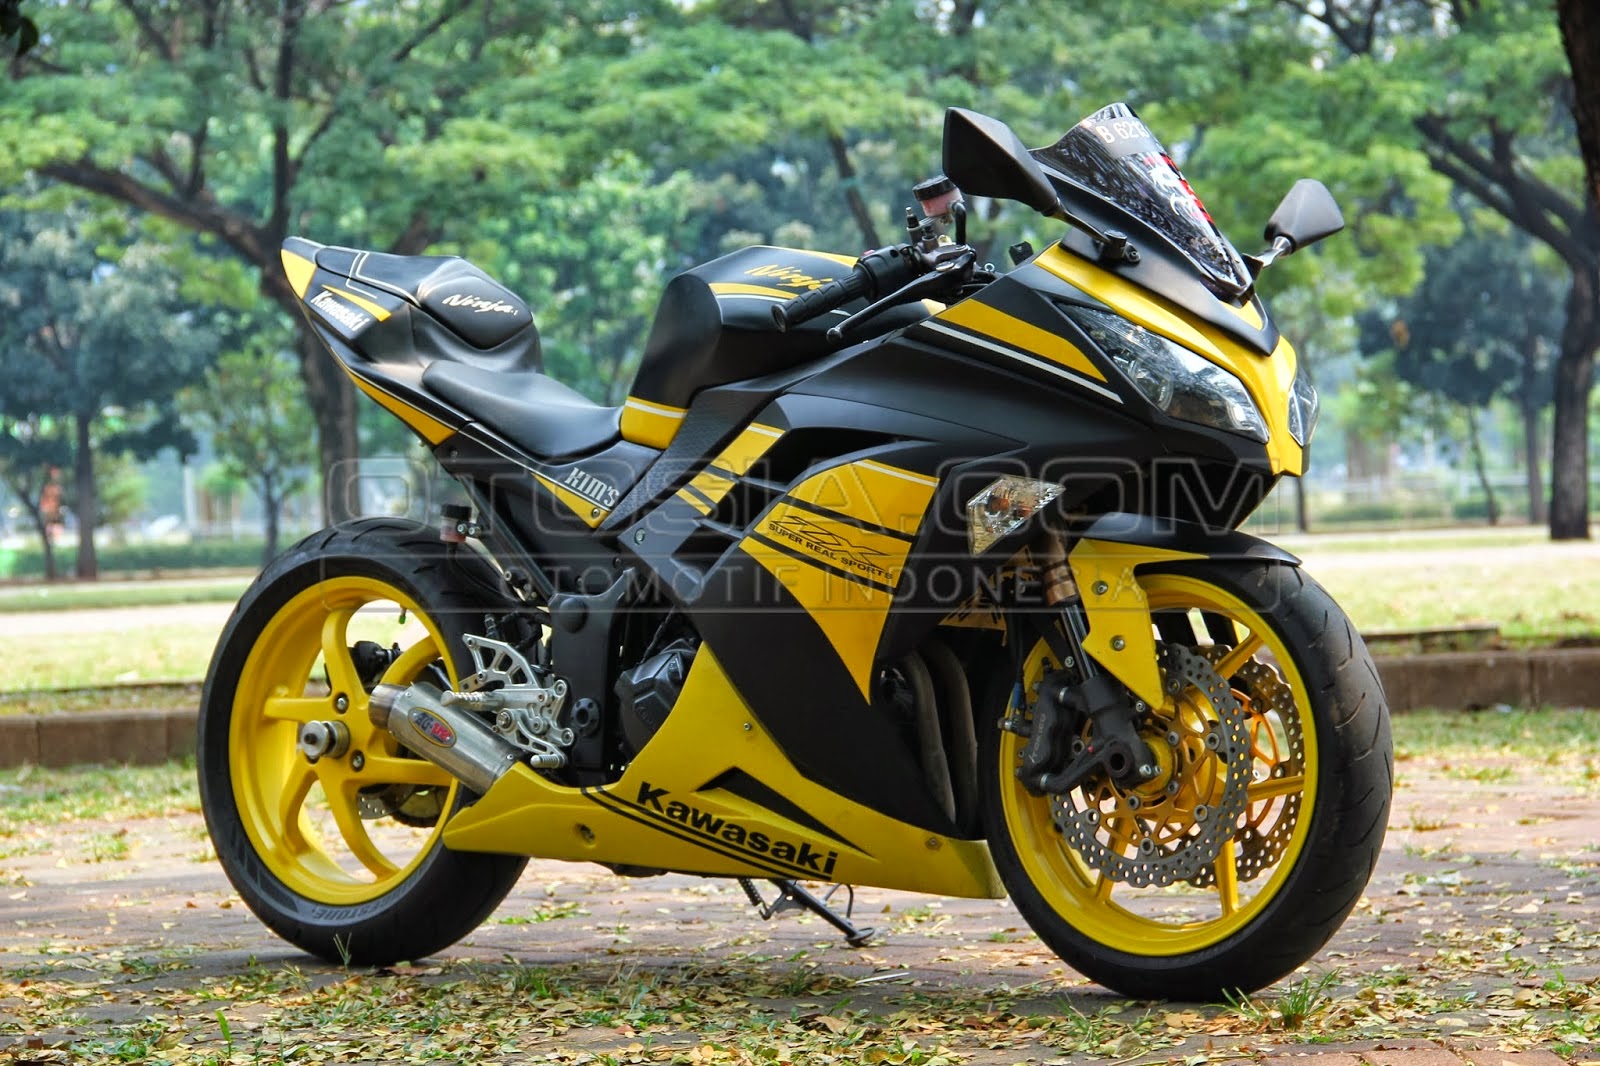 Ninja 250 Modifikasi Terbaru Thecitycyclist